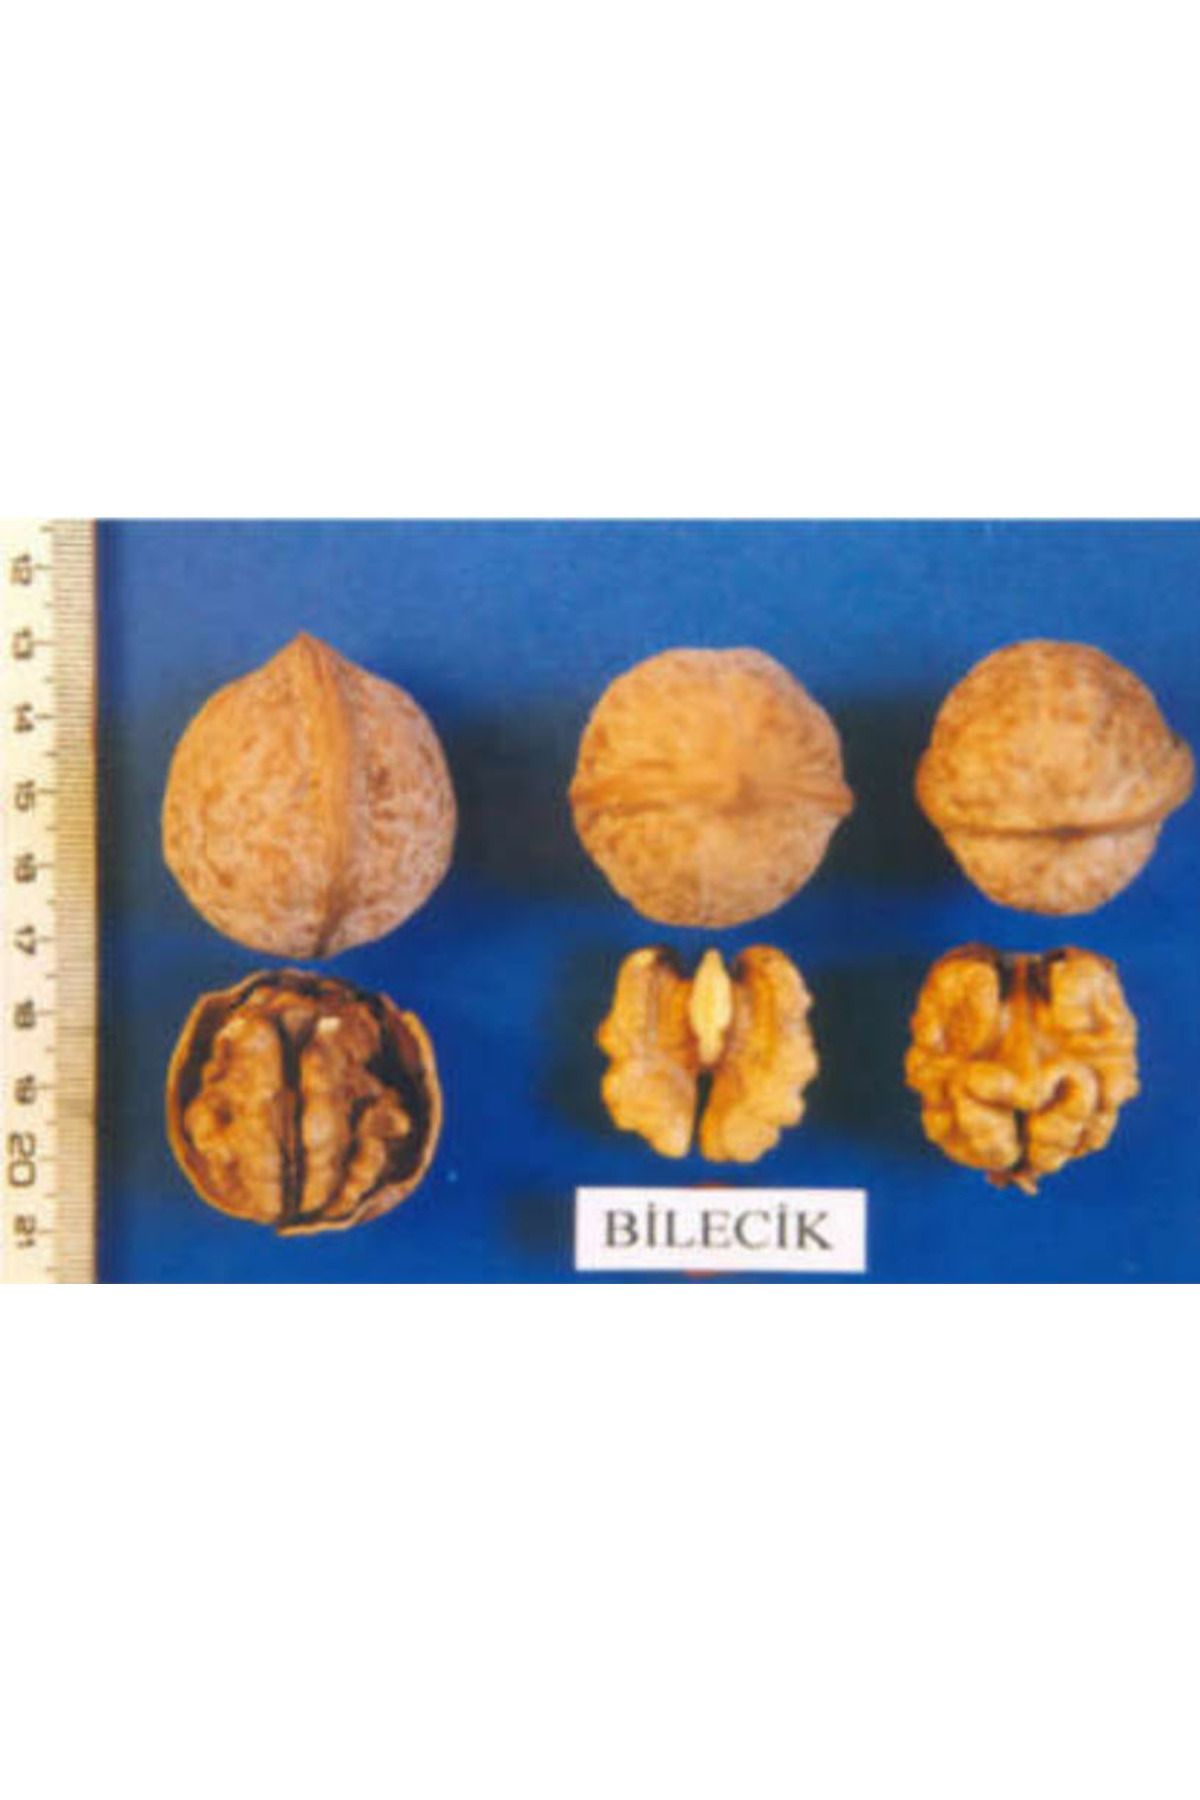 Tunç Botanik Bilecik Ceviz Fidanı 3 Yaş Tüplü Ve Aşılı 3 Adet